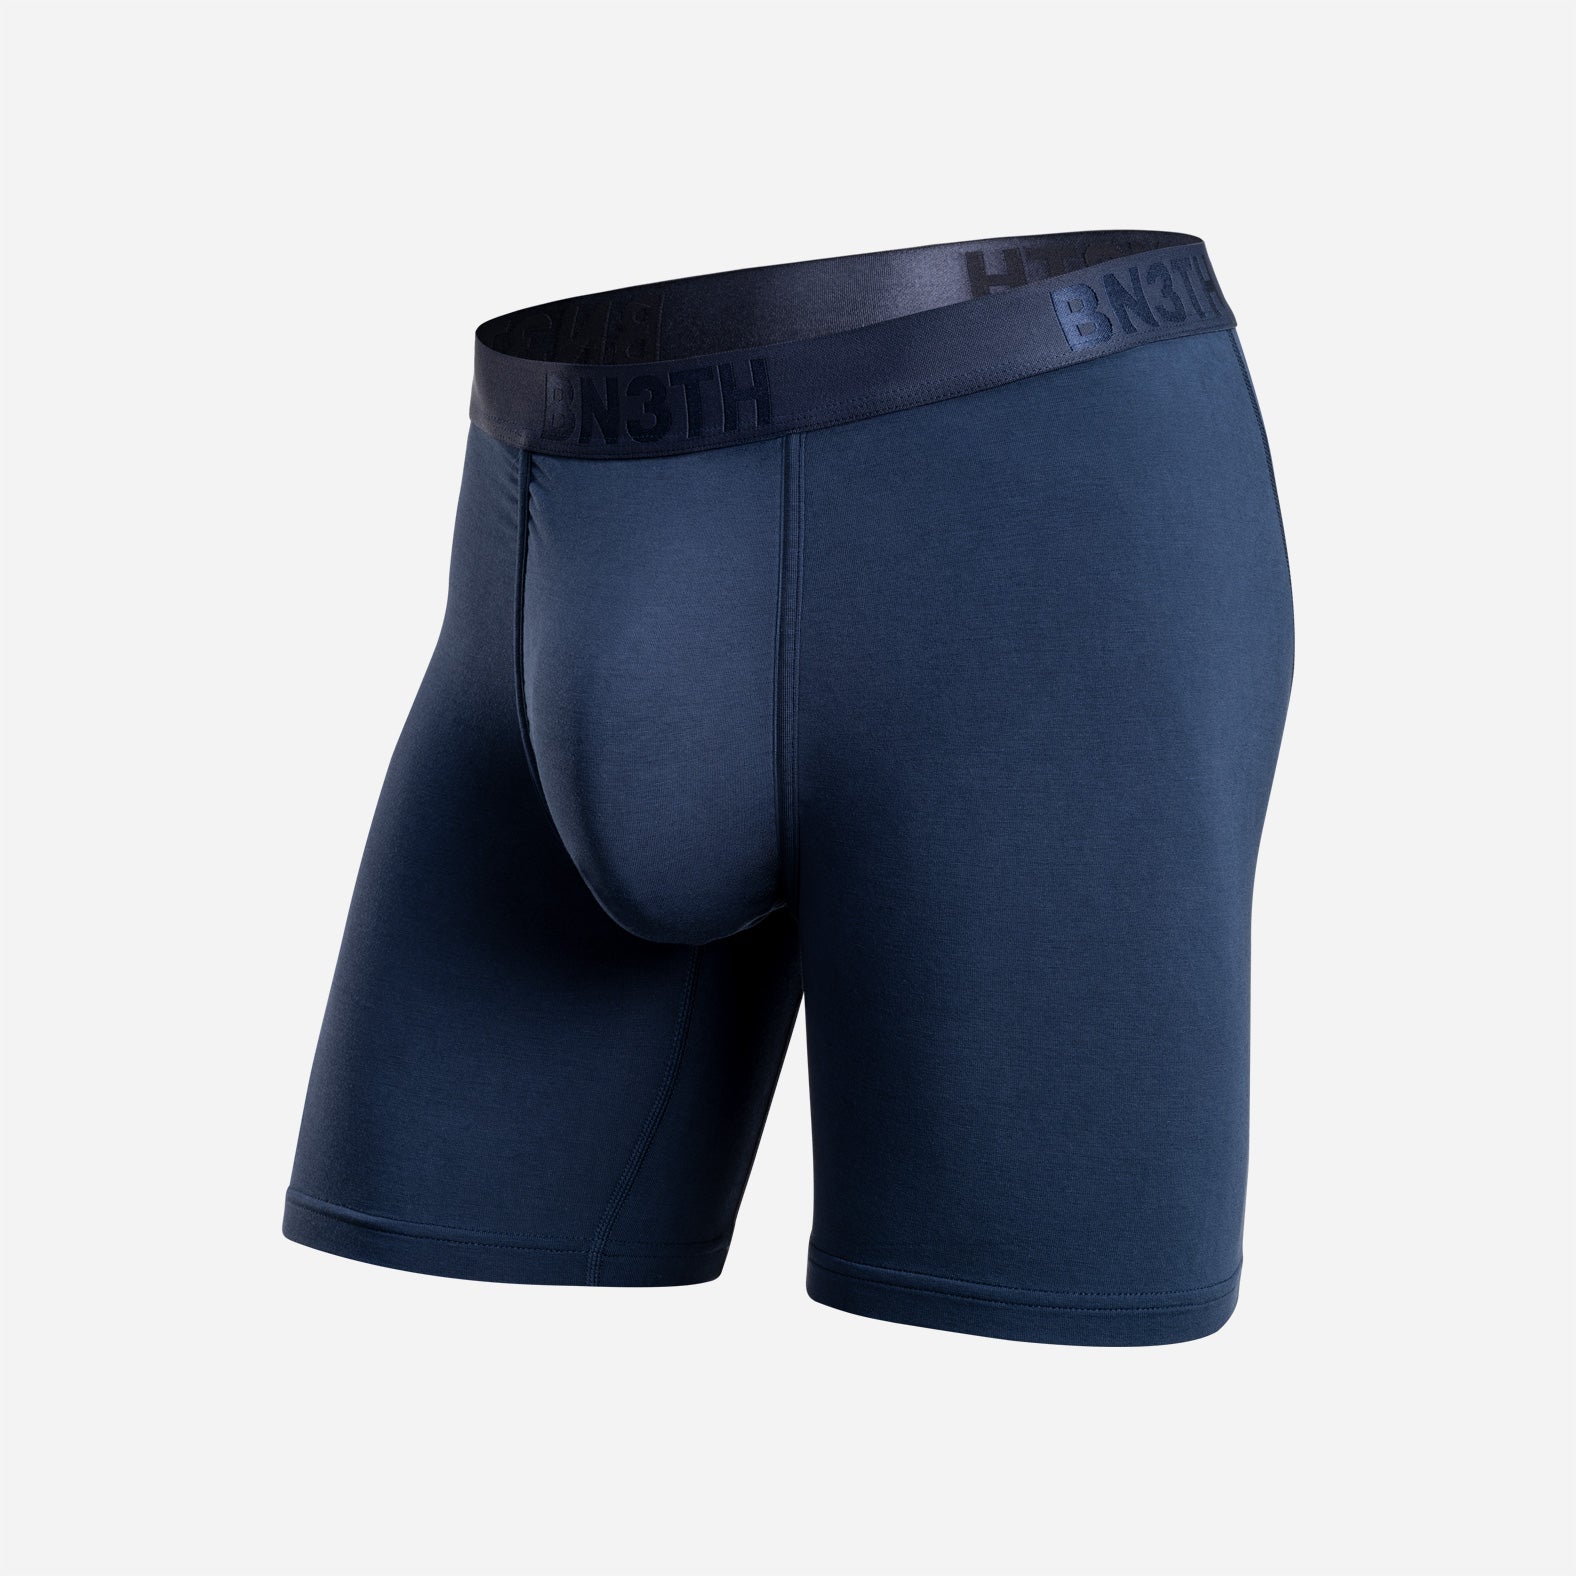 Classic Boxer – Navy BN3TH Brief: | Underwear